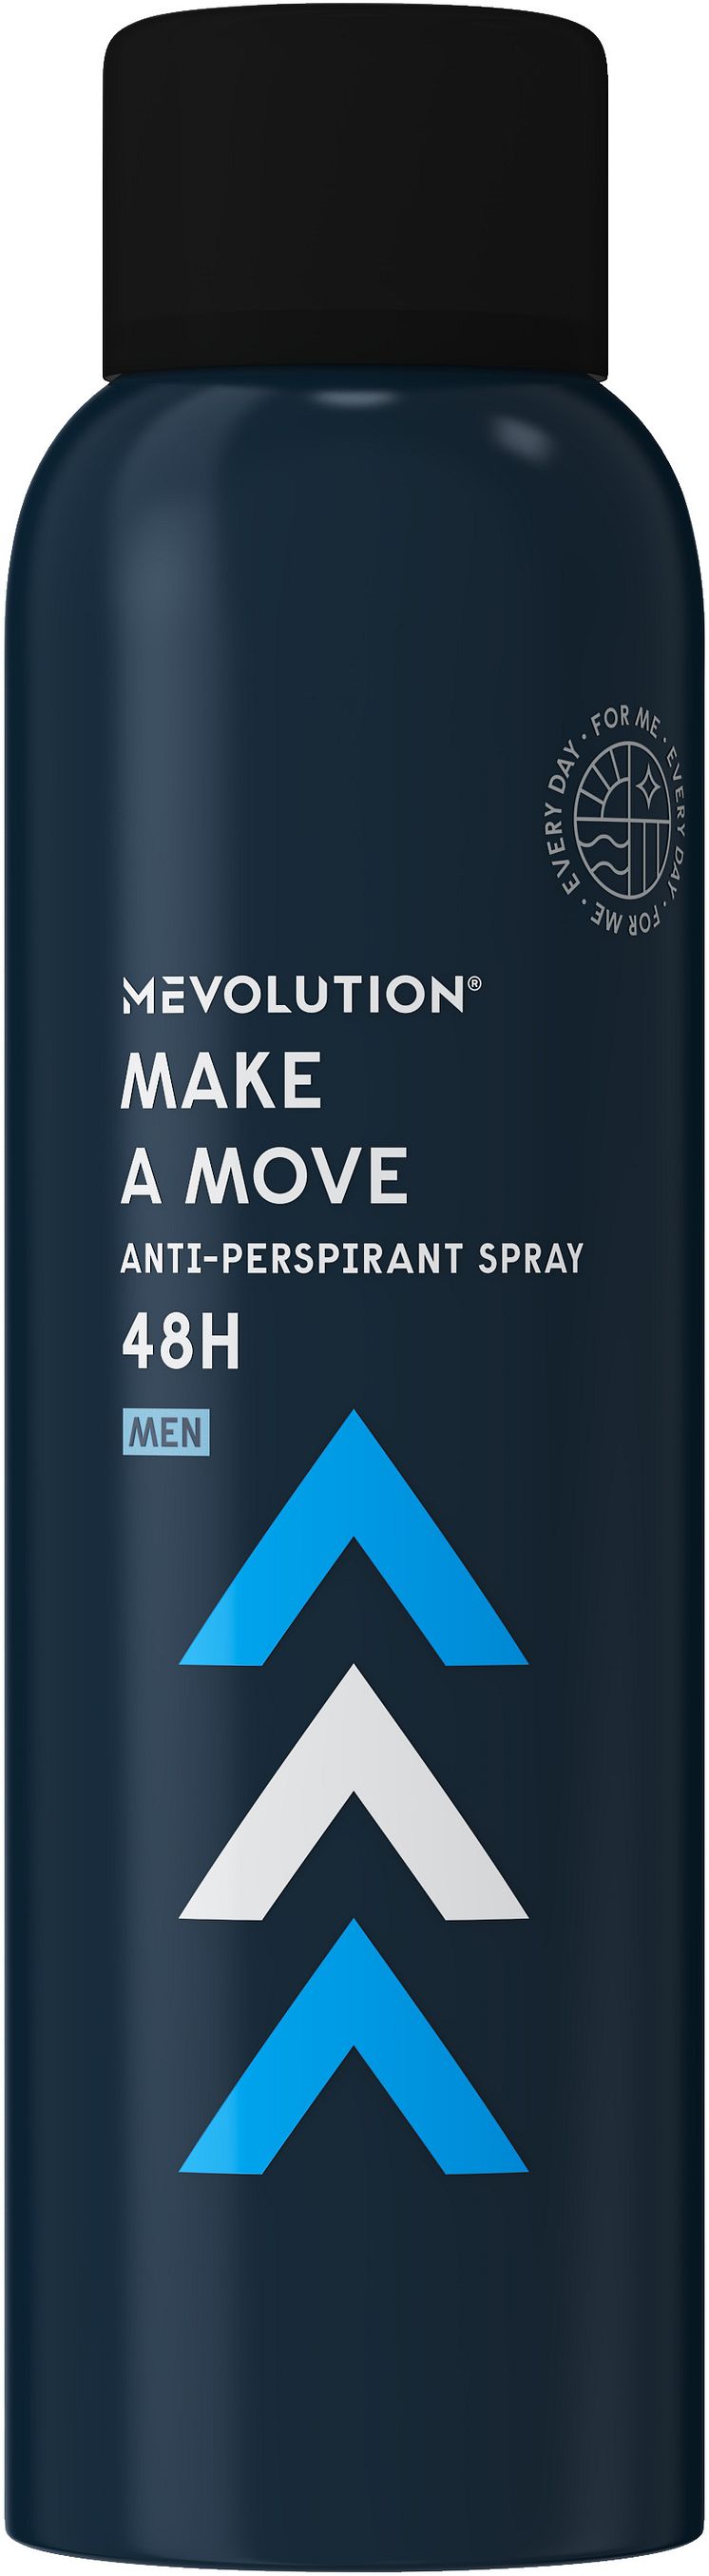 Mevolution Make A Move Anti-perspirant Spray